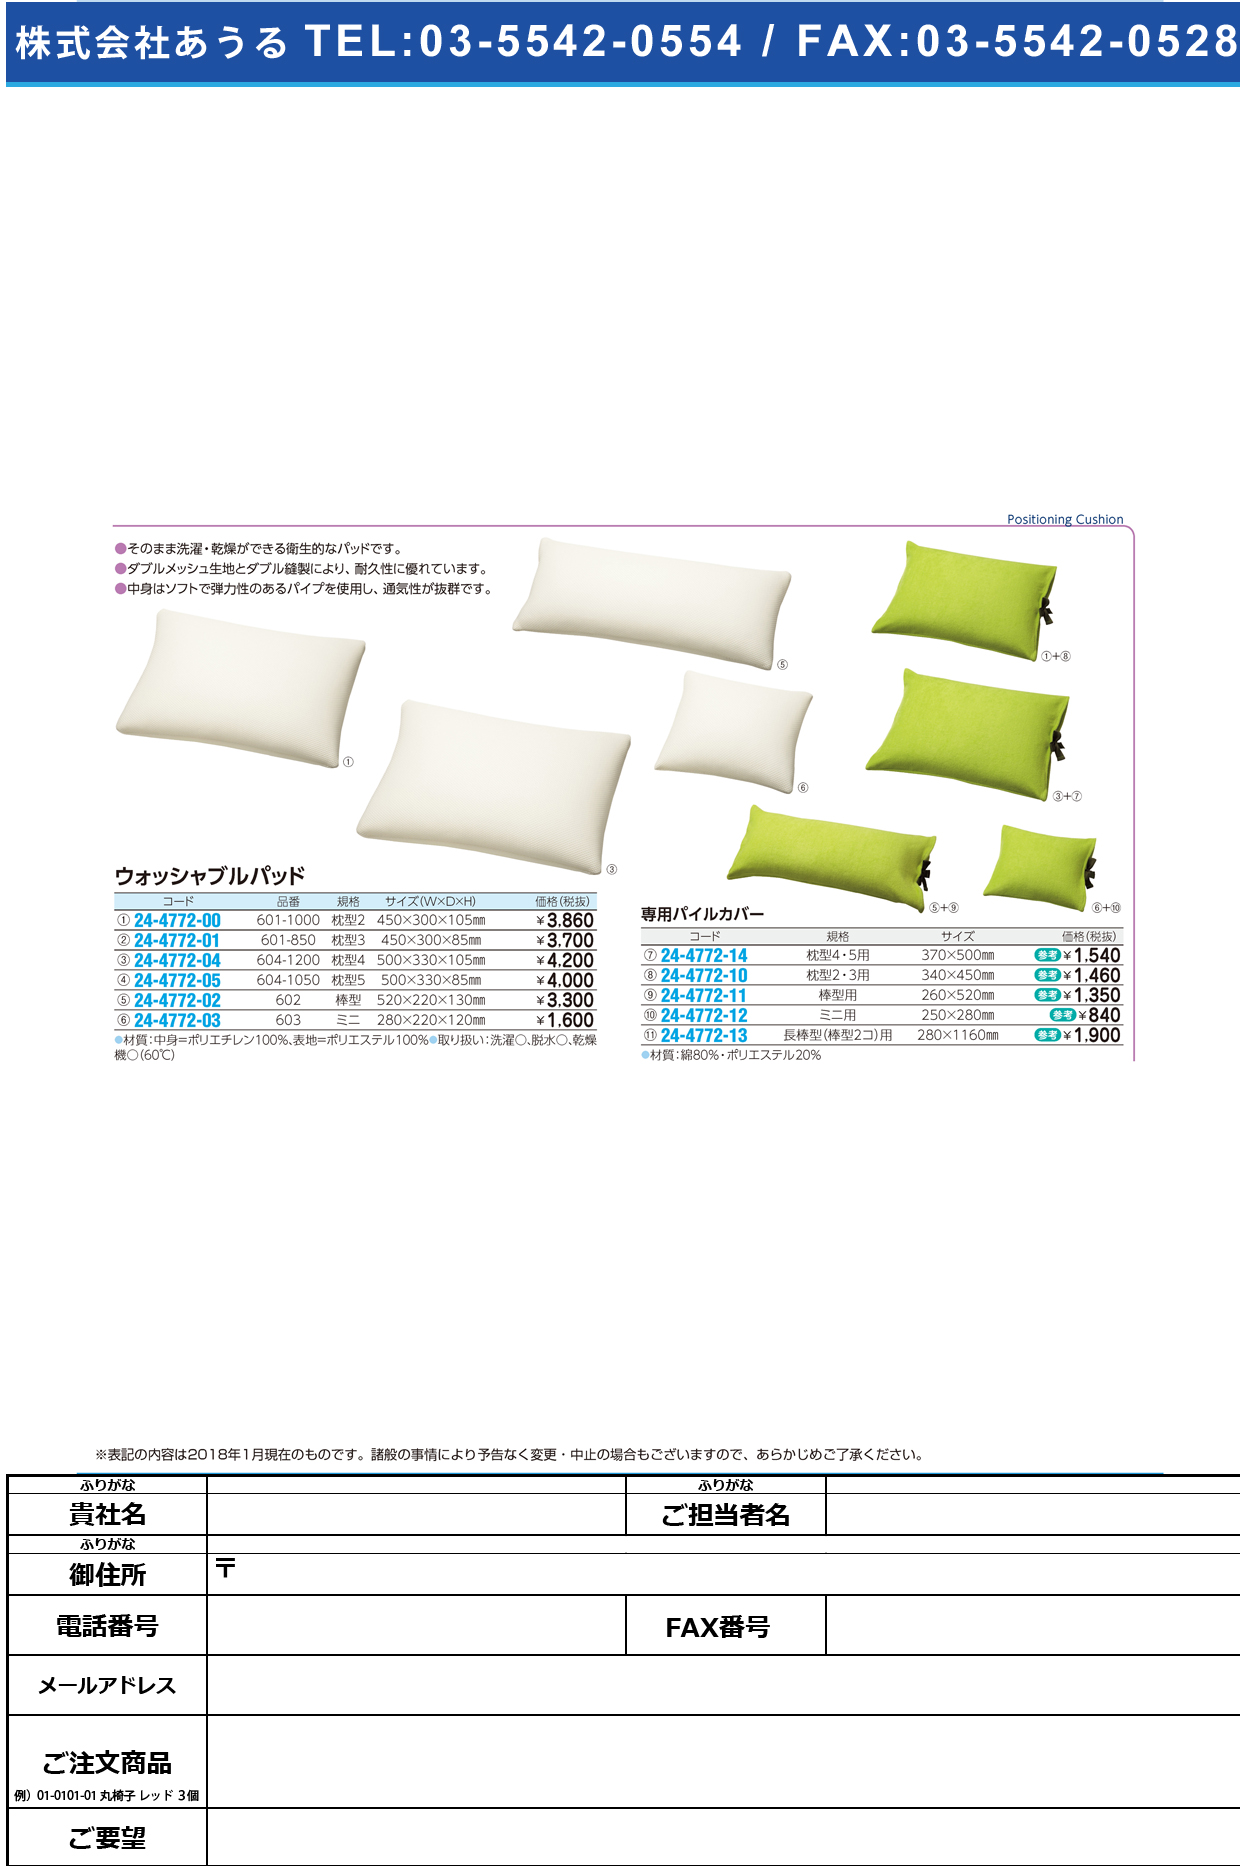 (24-4772-10)パイルカバー枕型２・３用 340X450MM(ｳｫｯｼｬﾌﾞﾙﾖｳ ﾊﾟｲﾙｶﾊﾞｰ【1枚単位】【2019年カタログ商品】